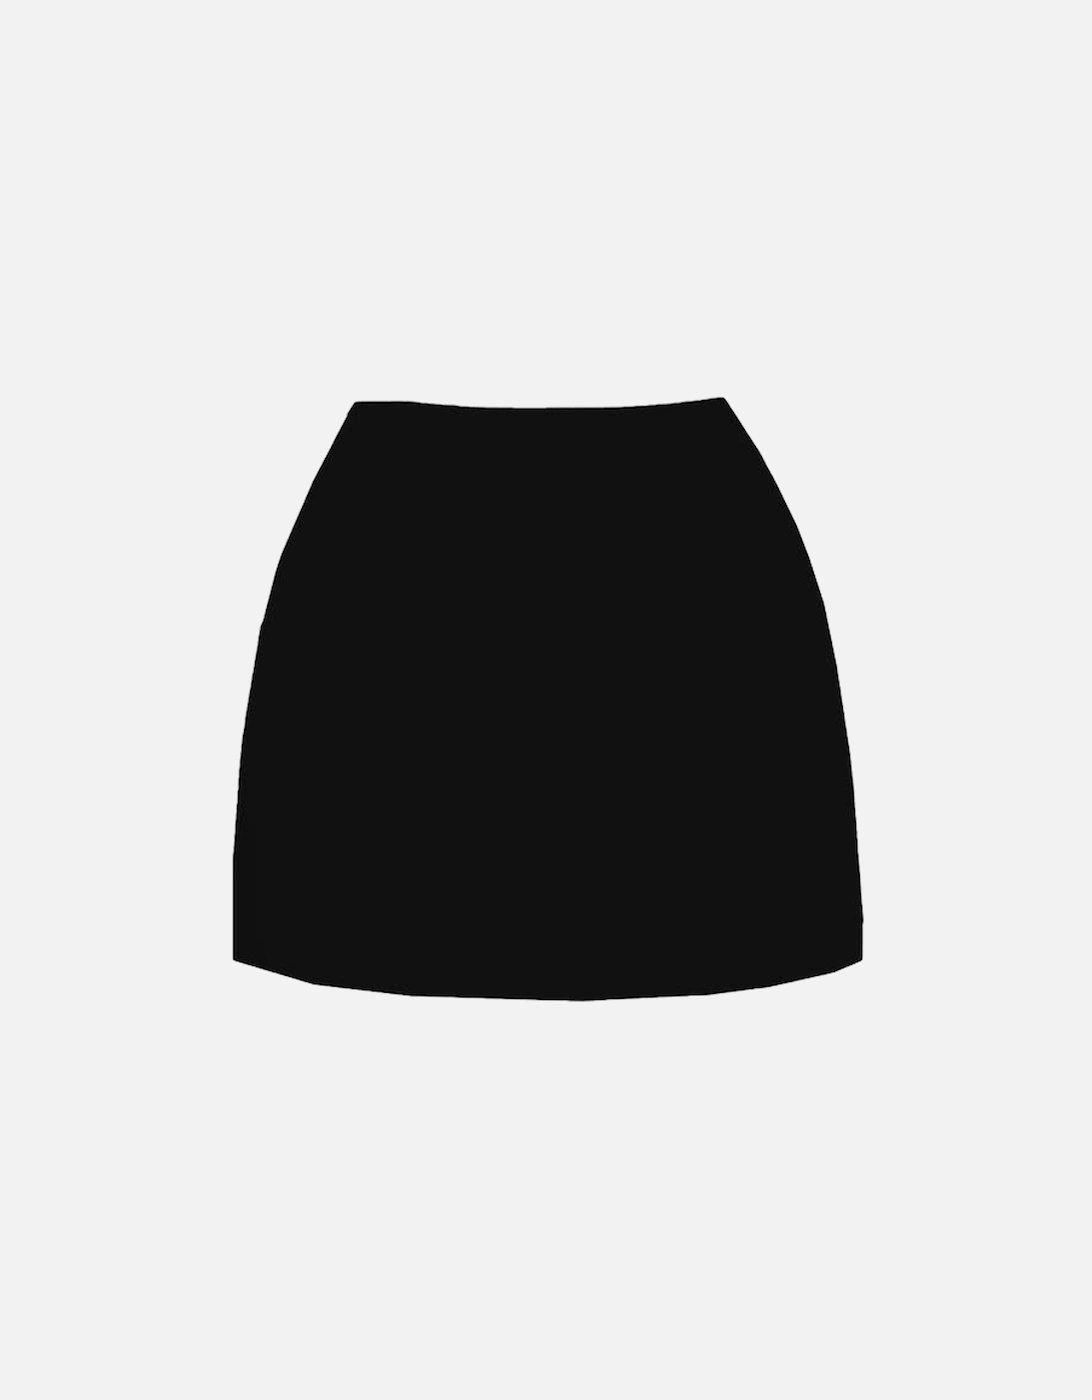 Callie Co-ord Luxe Mini Skirt Black